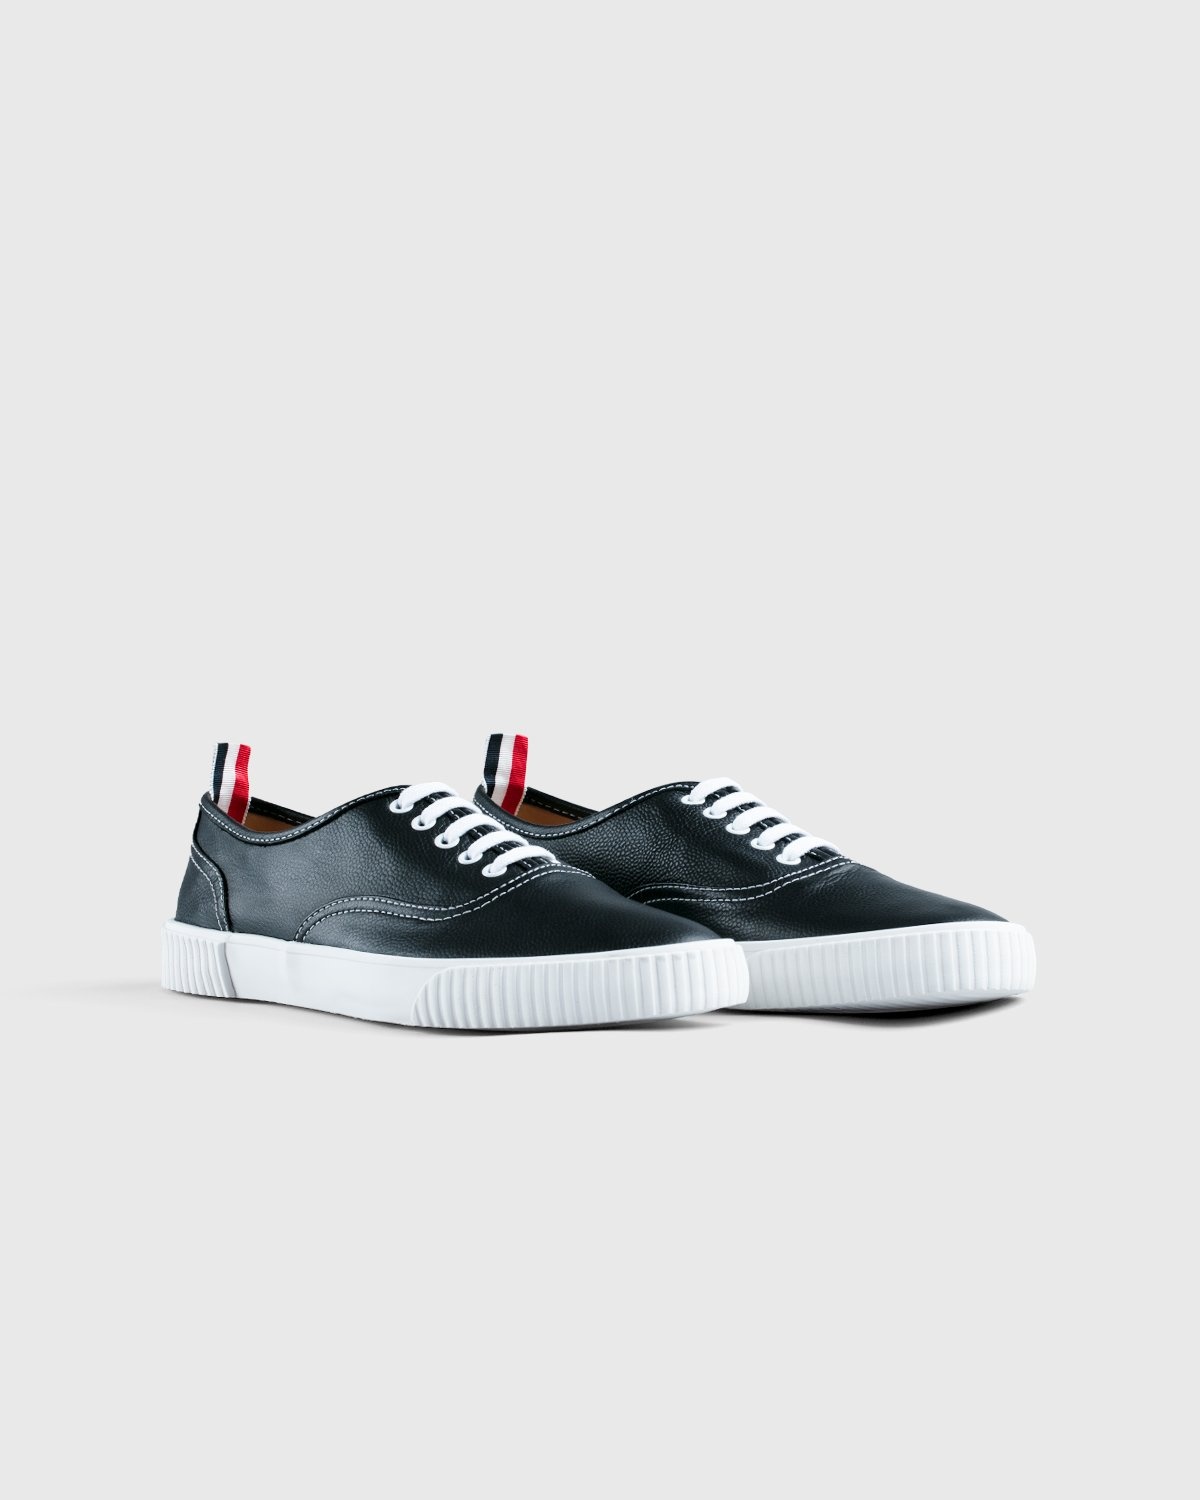 Thom Browne x Highsnobiety – Men's Heritage Sneaker Grey - Low Top Sneakers - Grey - Image 2